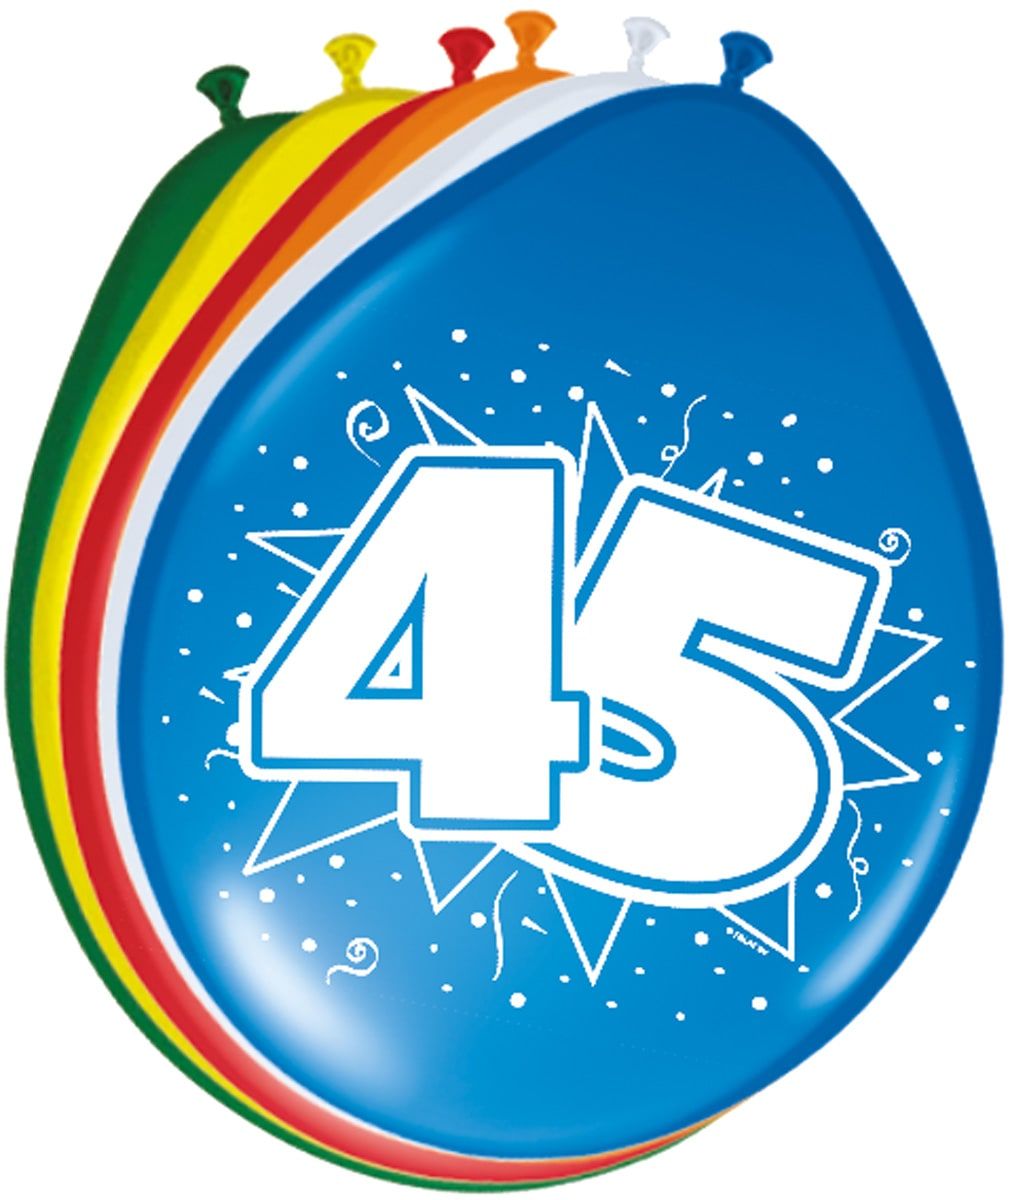 Feestelijke verjaardag ballonnen 45 jaar